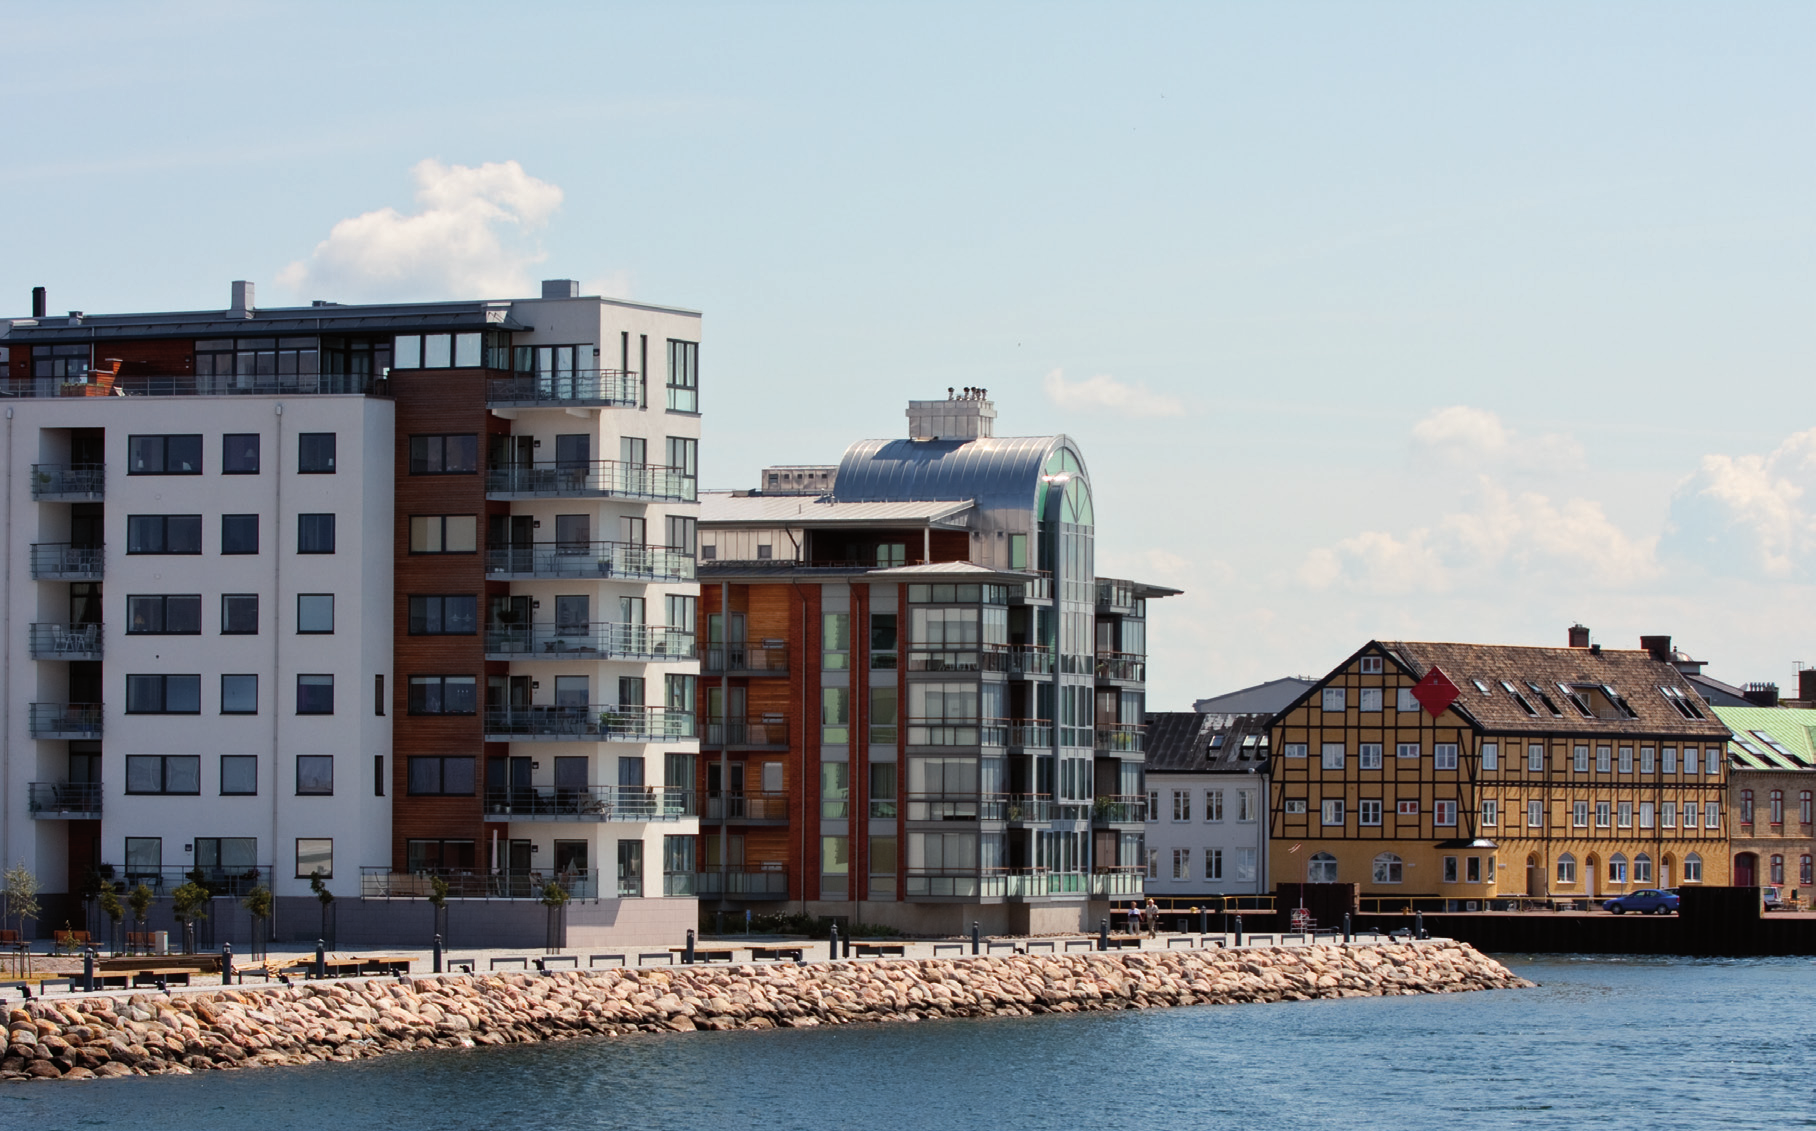 Ett upprustat Landskrona Under senare år har skillnaderna mellan fattiga och rika vuxit i Landskrona.